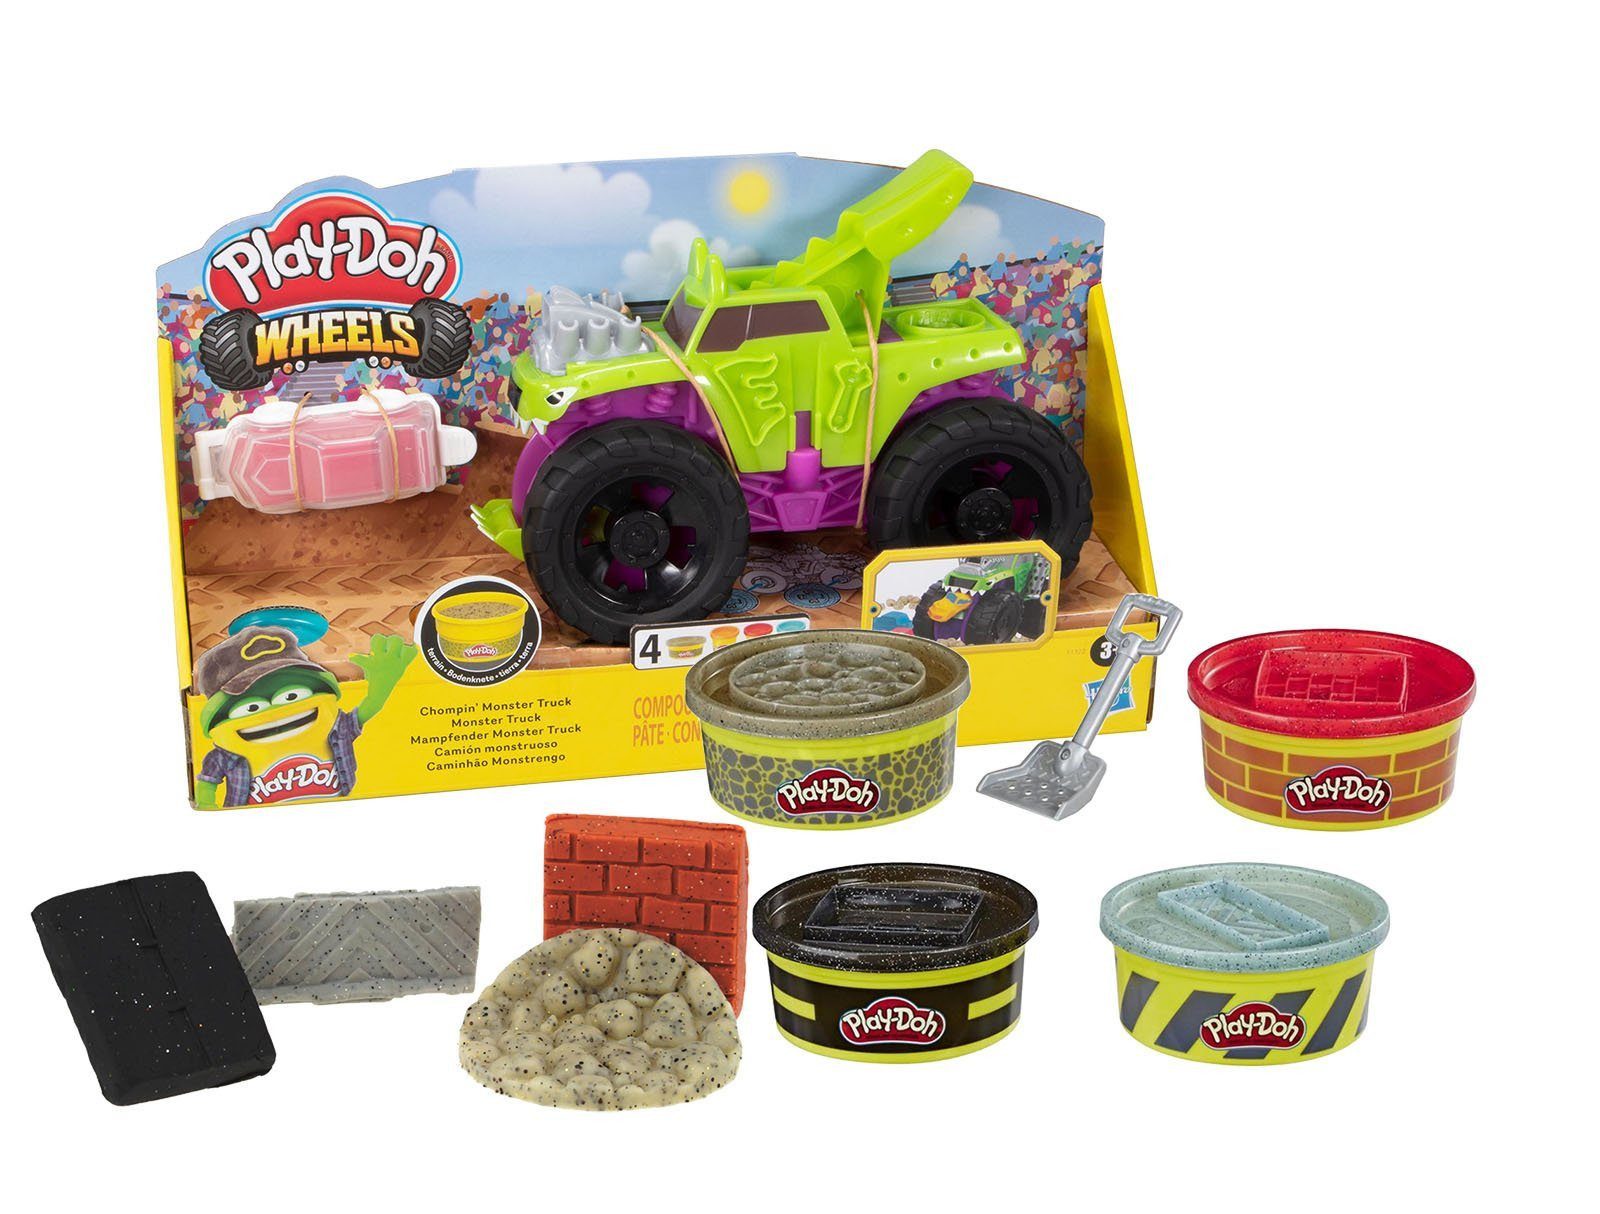 Play-Doh Knete Play-Doh Knete Play-Doh Wheels Mampfender Monster Truck